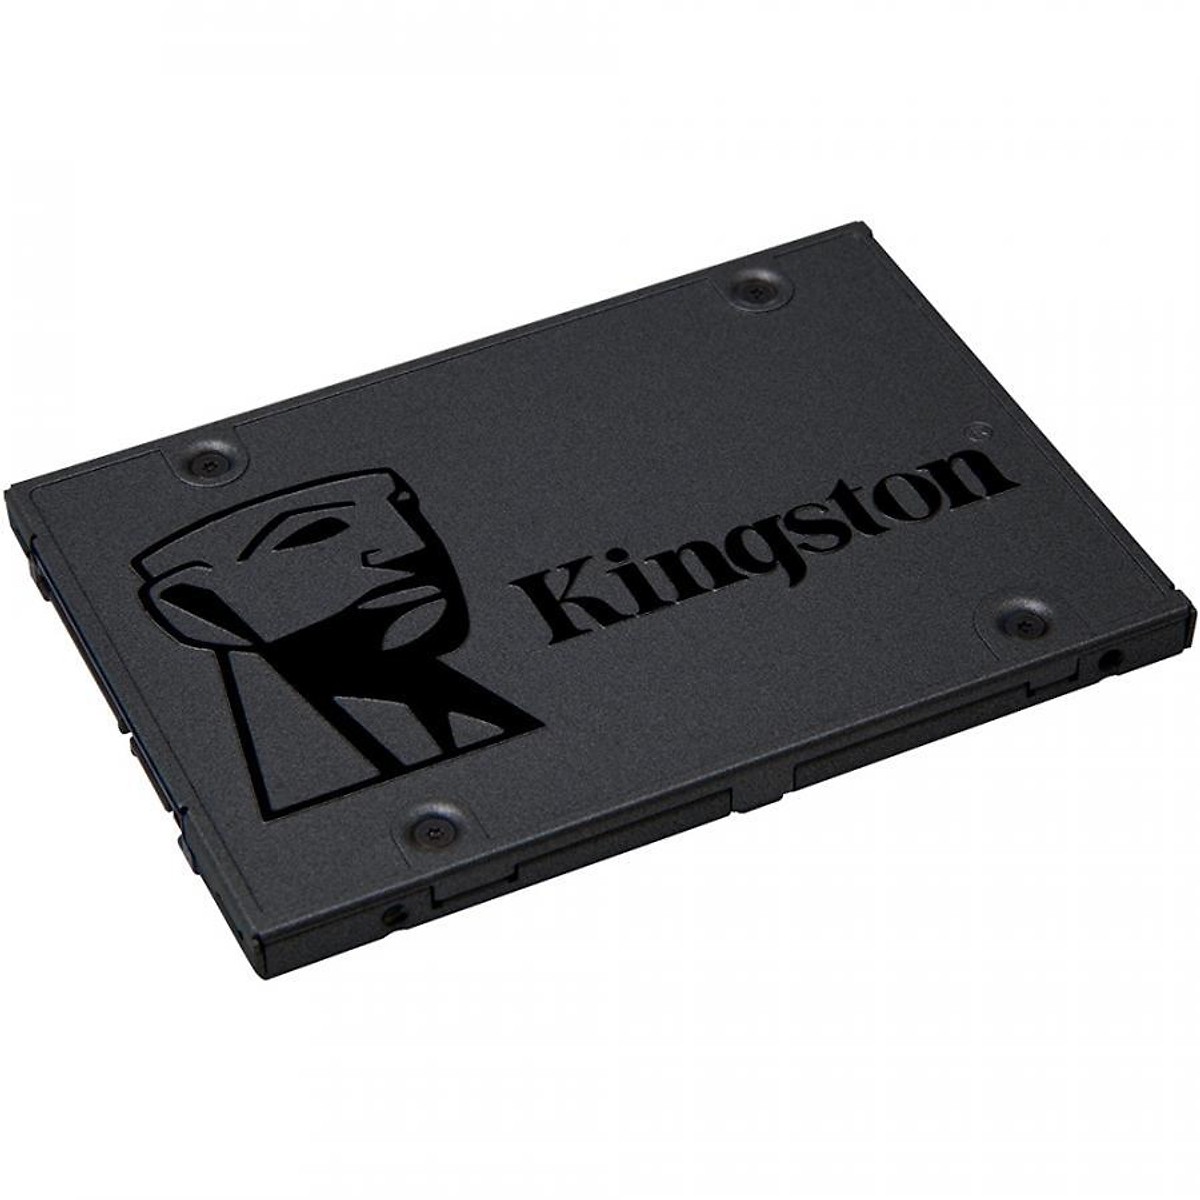 Ổ SSD Kingston SA400 120Gb SATA3 (đọc: 500MB/s /ghi: 320MB/s)